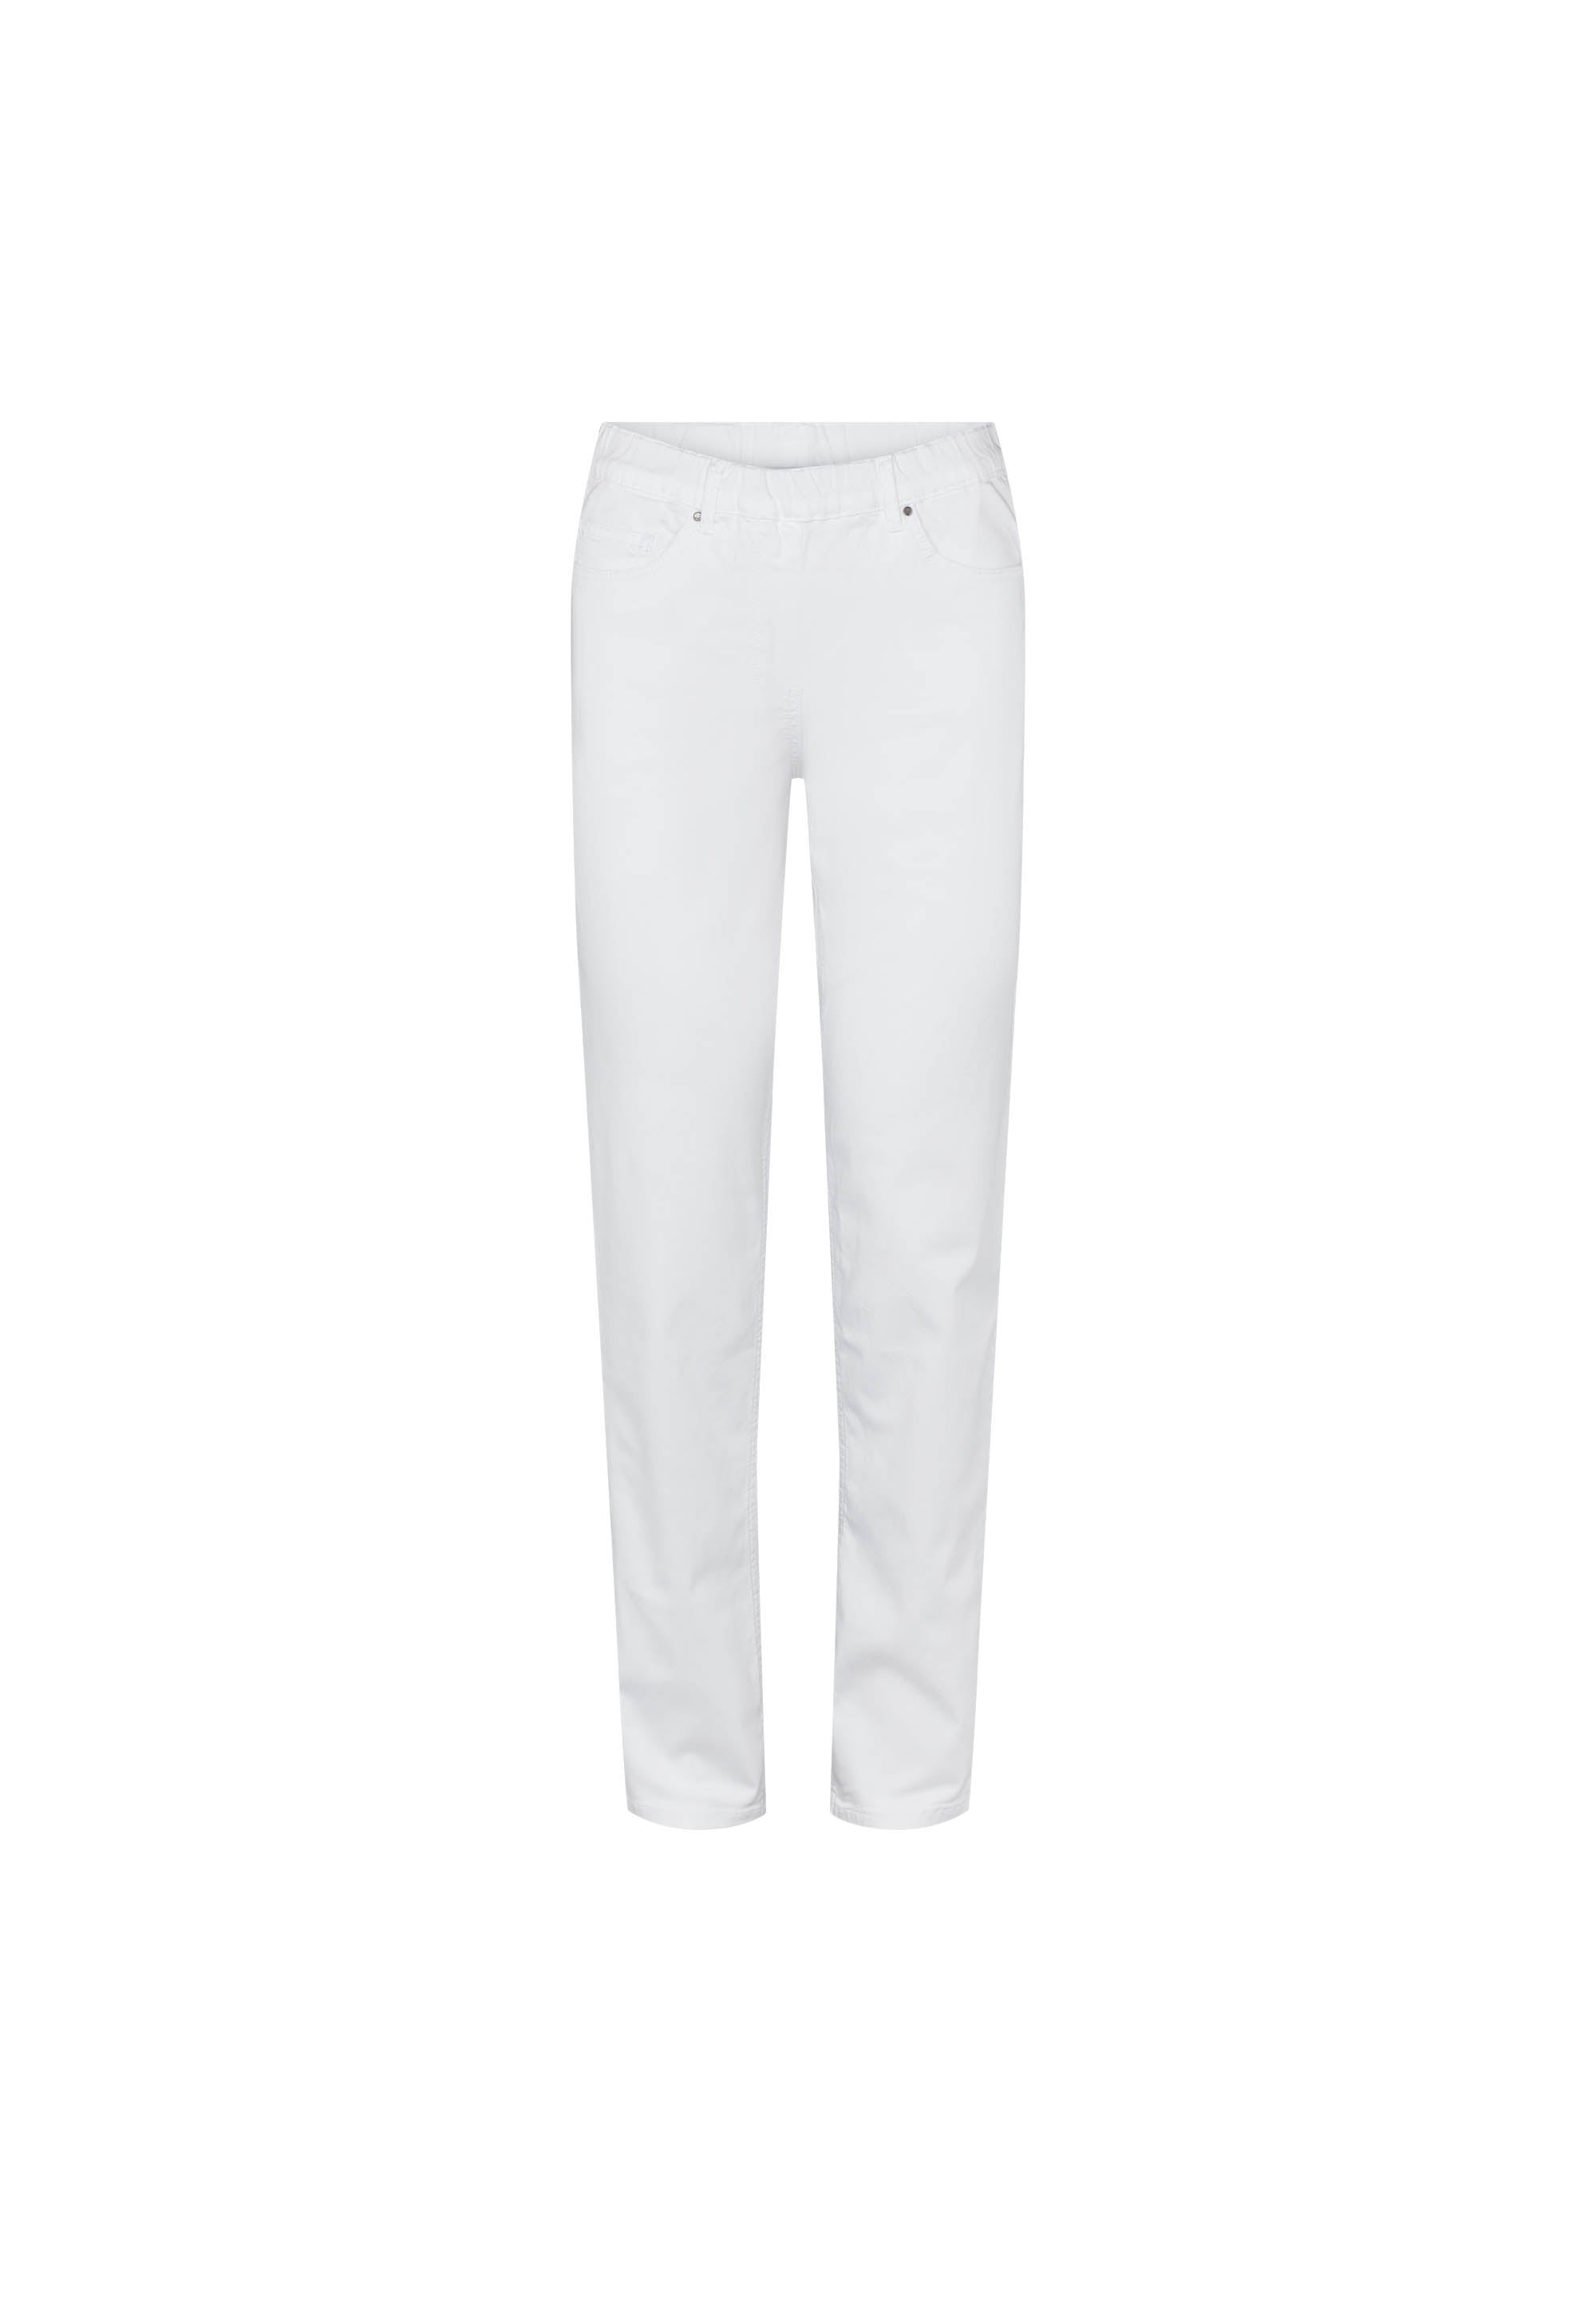 LAURIE Hannah Regular - Medium Length Trousers REGULAR Weiss